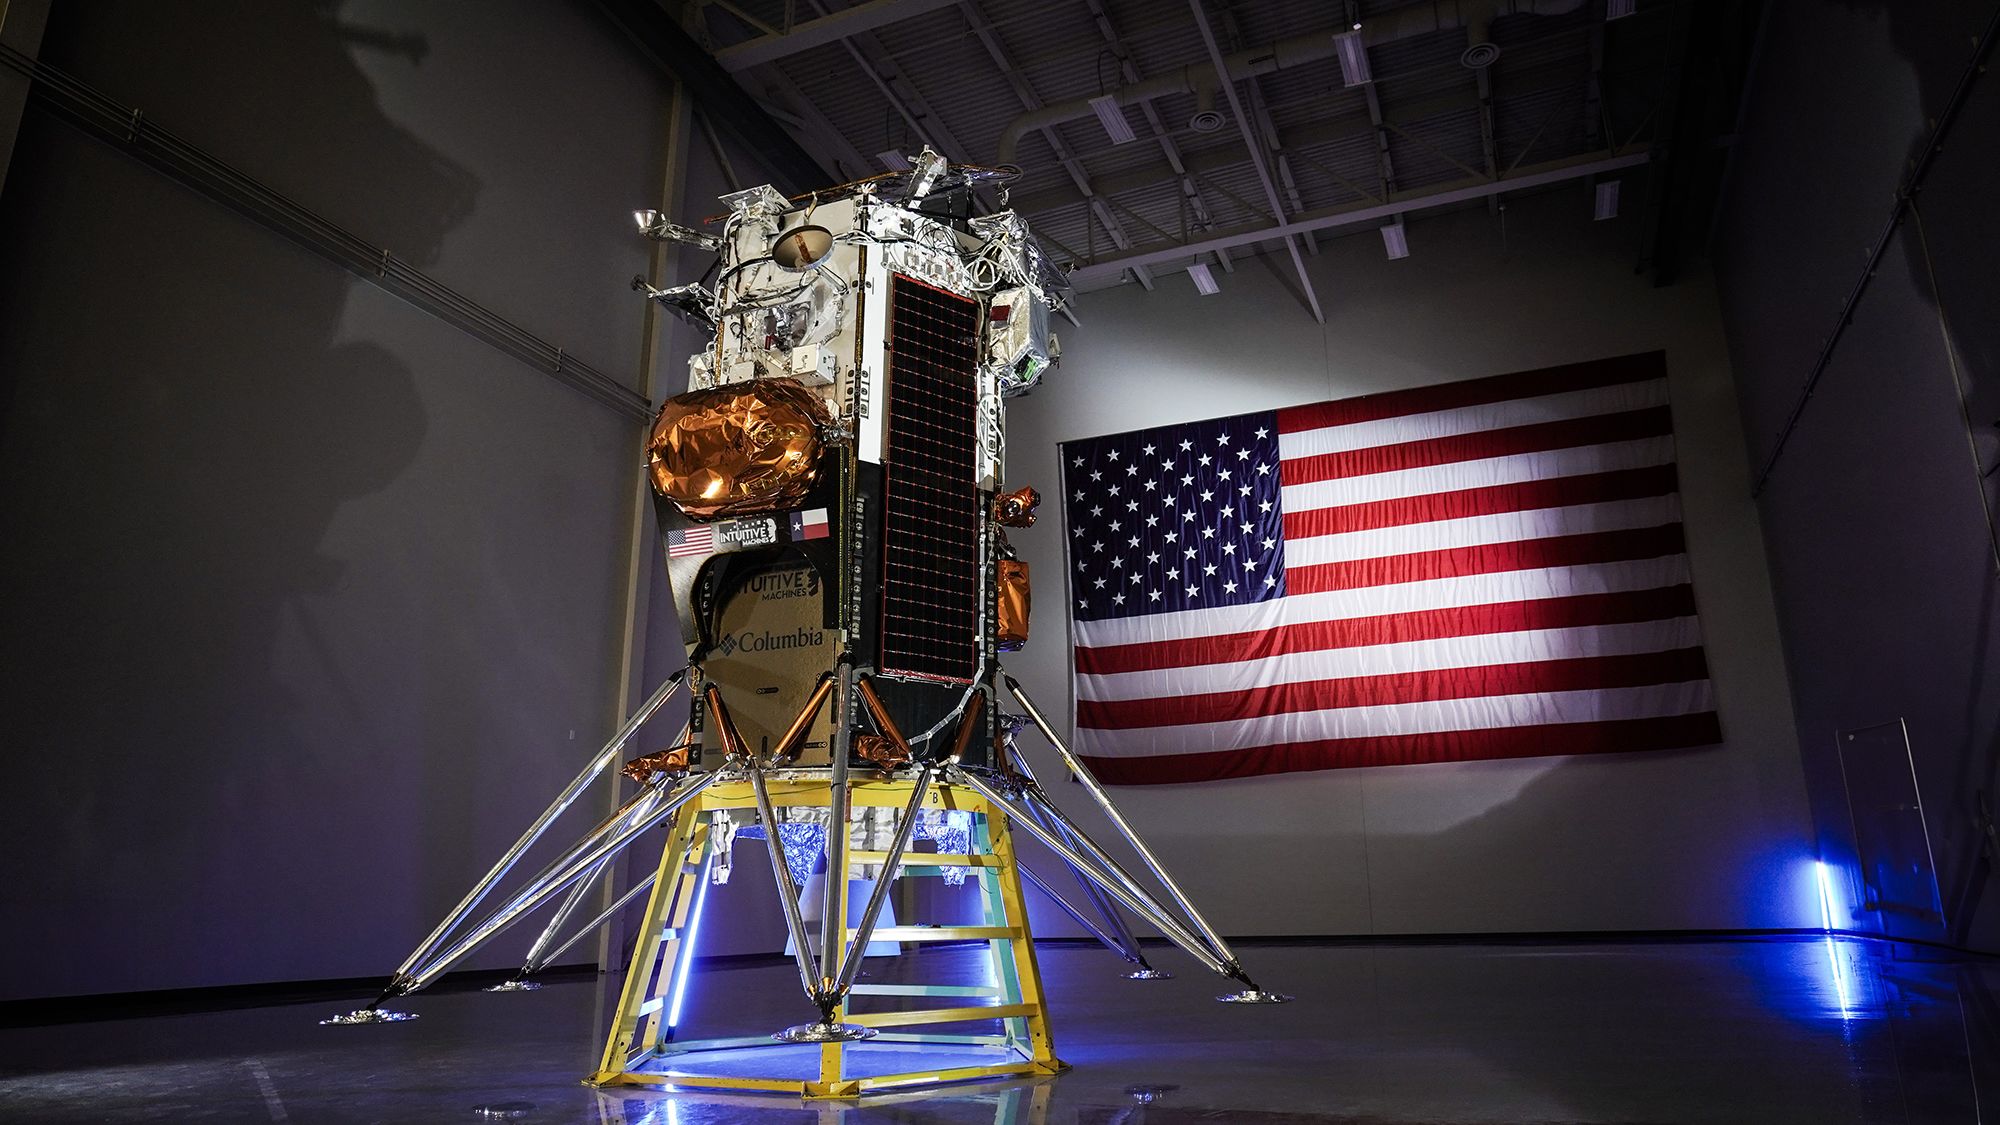 La nave espacial, apodada Odie, tiene aproximadamente el tamaño de una cabina telefónica y está equipada con su propio motor. Intuitive Machines, con sede en Houston, desarrolló el módulo de aterrizaje lunar Nova-C bajo una iniciativa de la NASA.